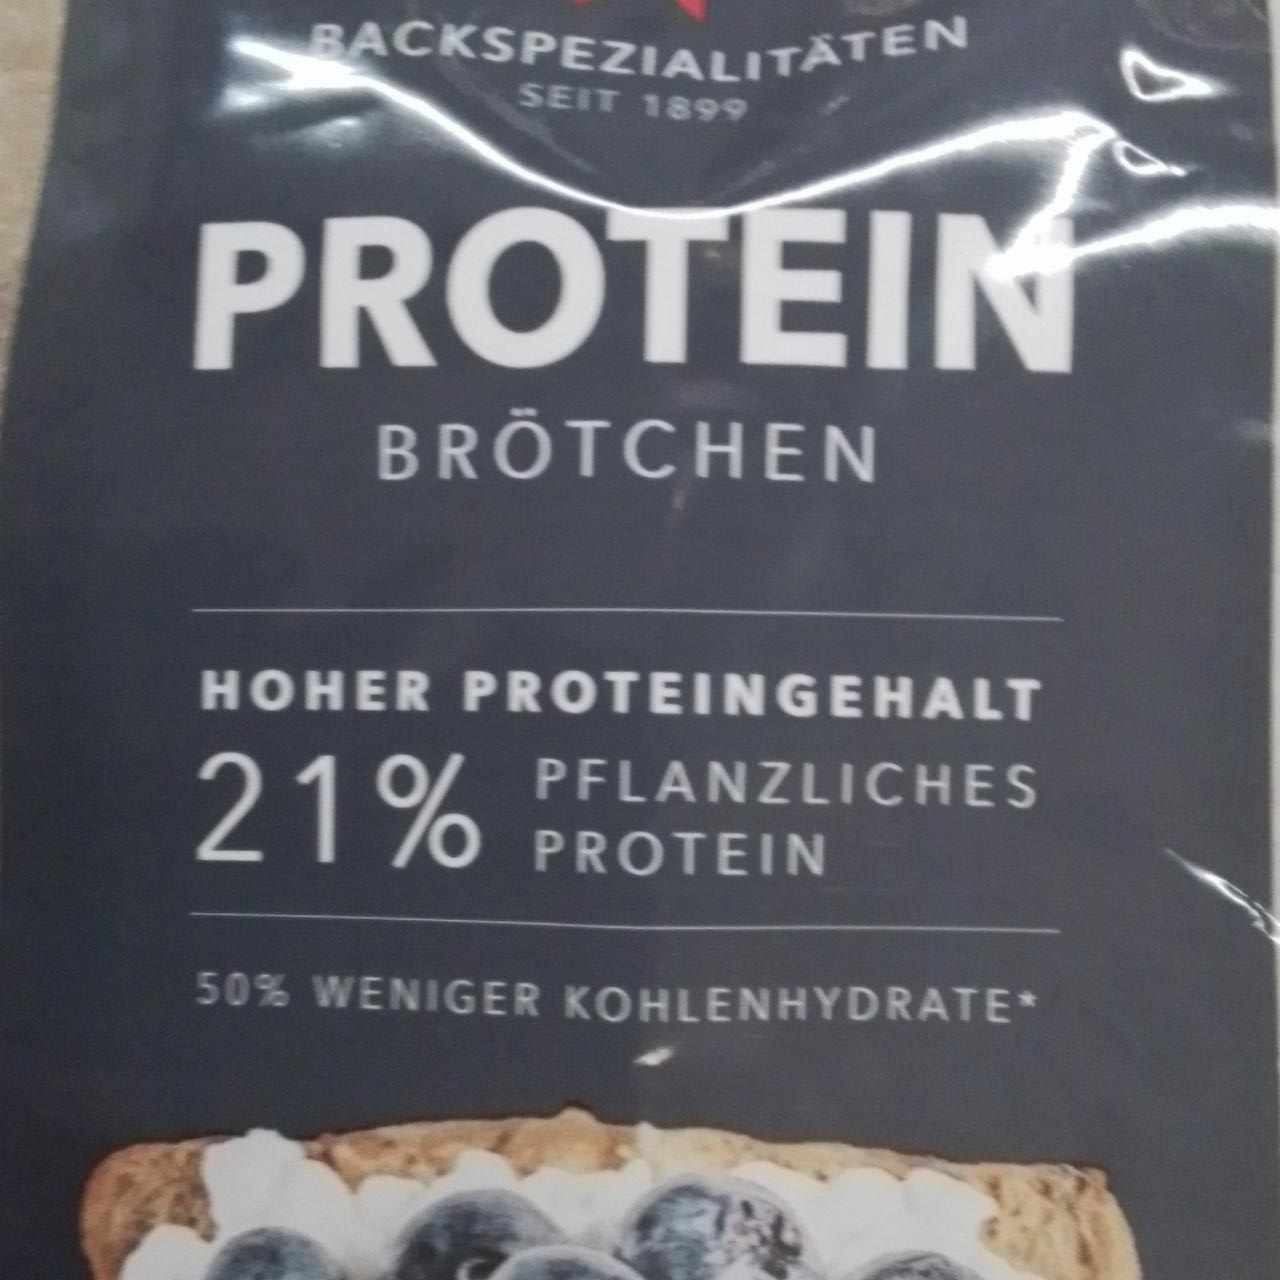 Zdjęcia - Chleb proteinowy Backspezialitaten